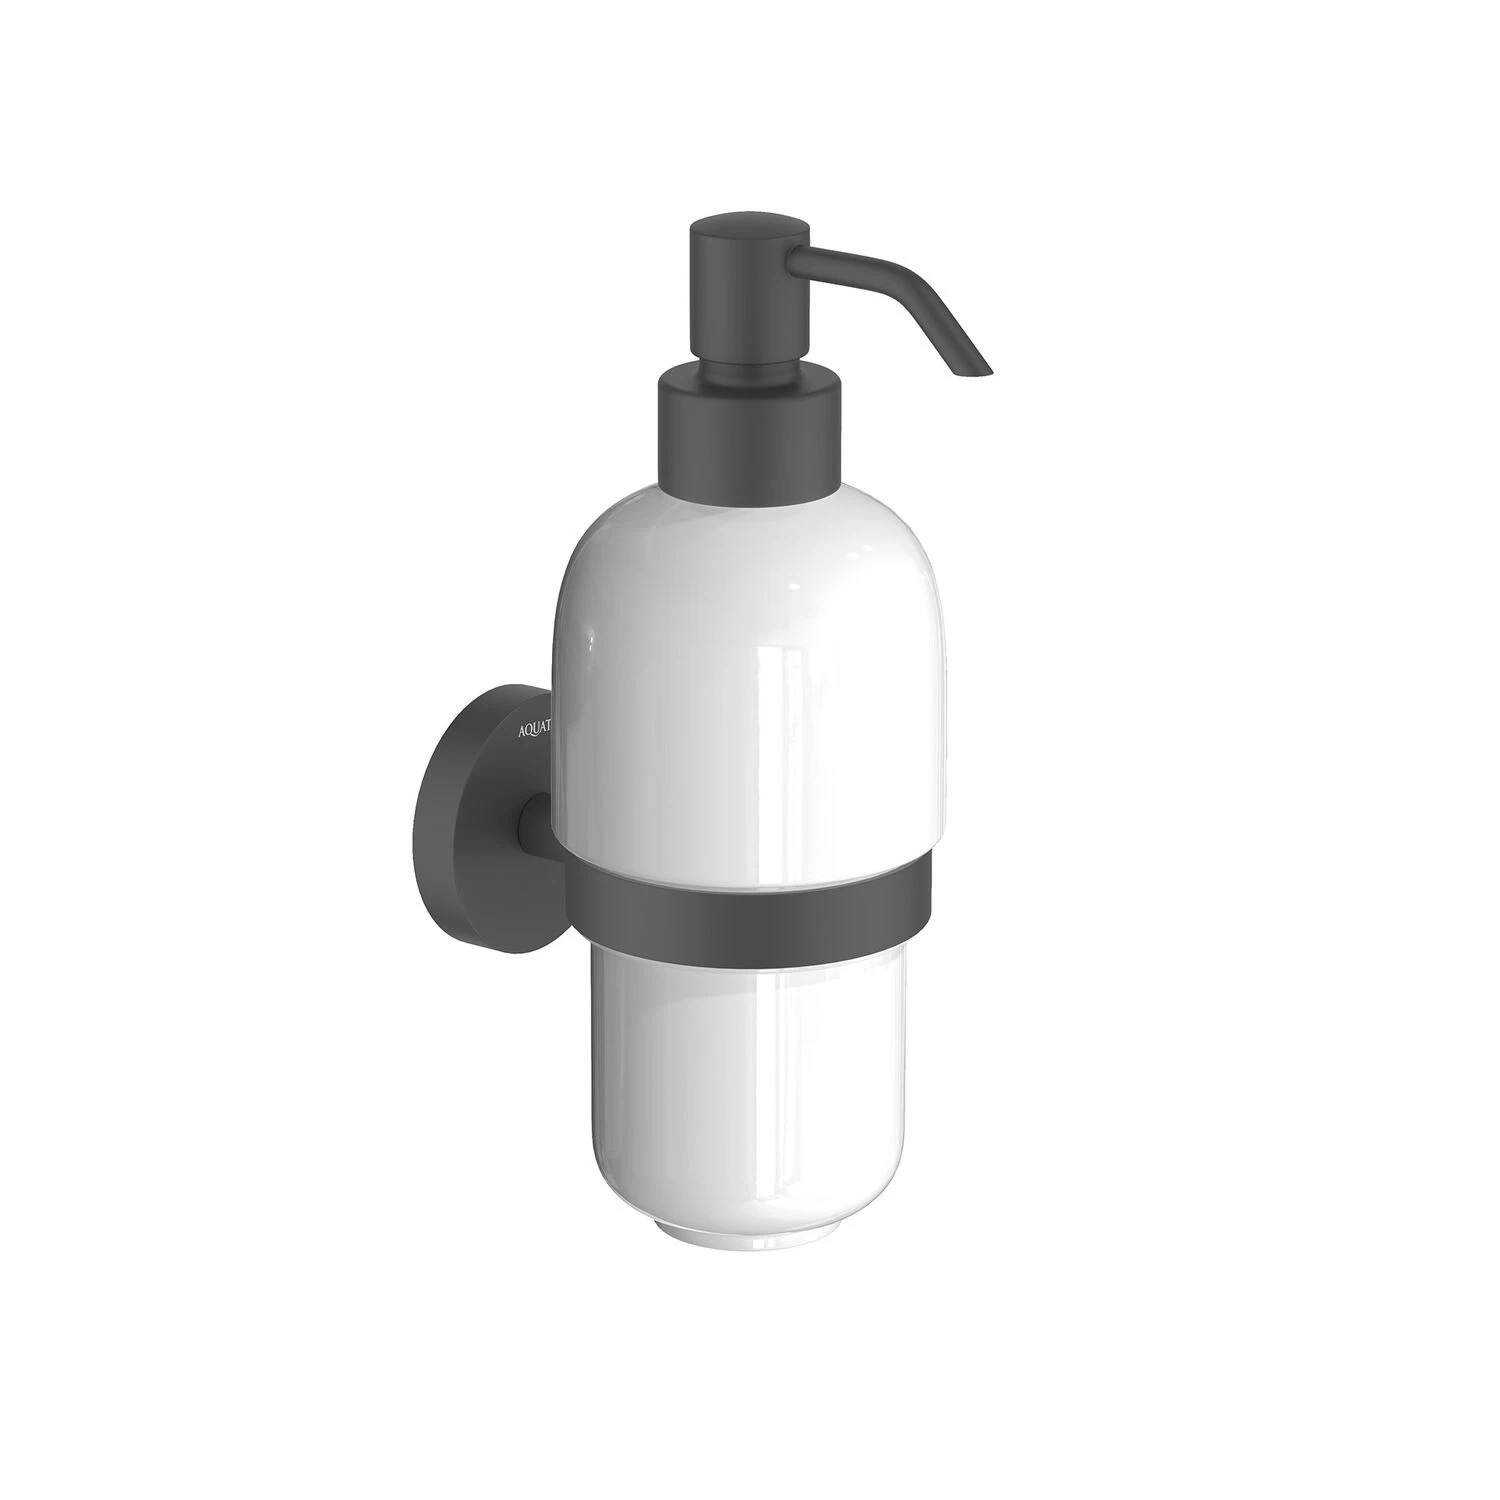 Дозатор Акватек Бетта AQ4605MB для жидкого мыла, подвесной, цвет матовый черный